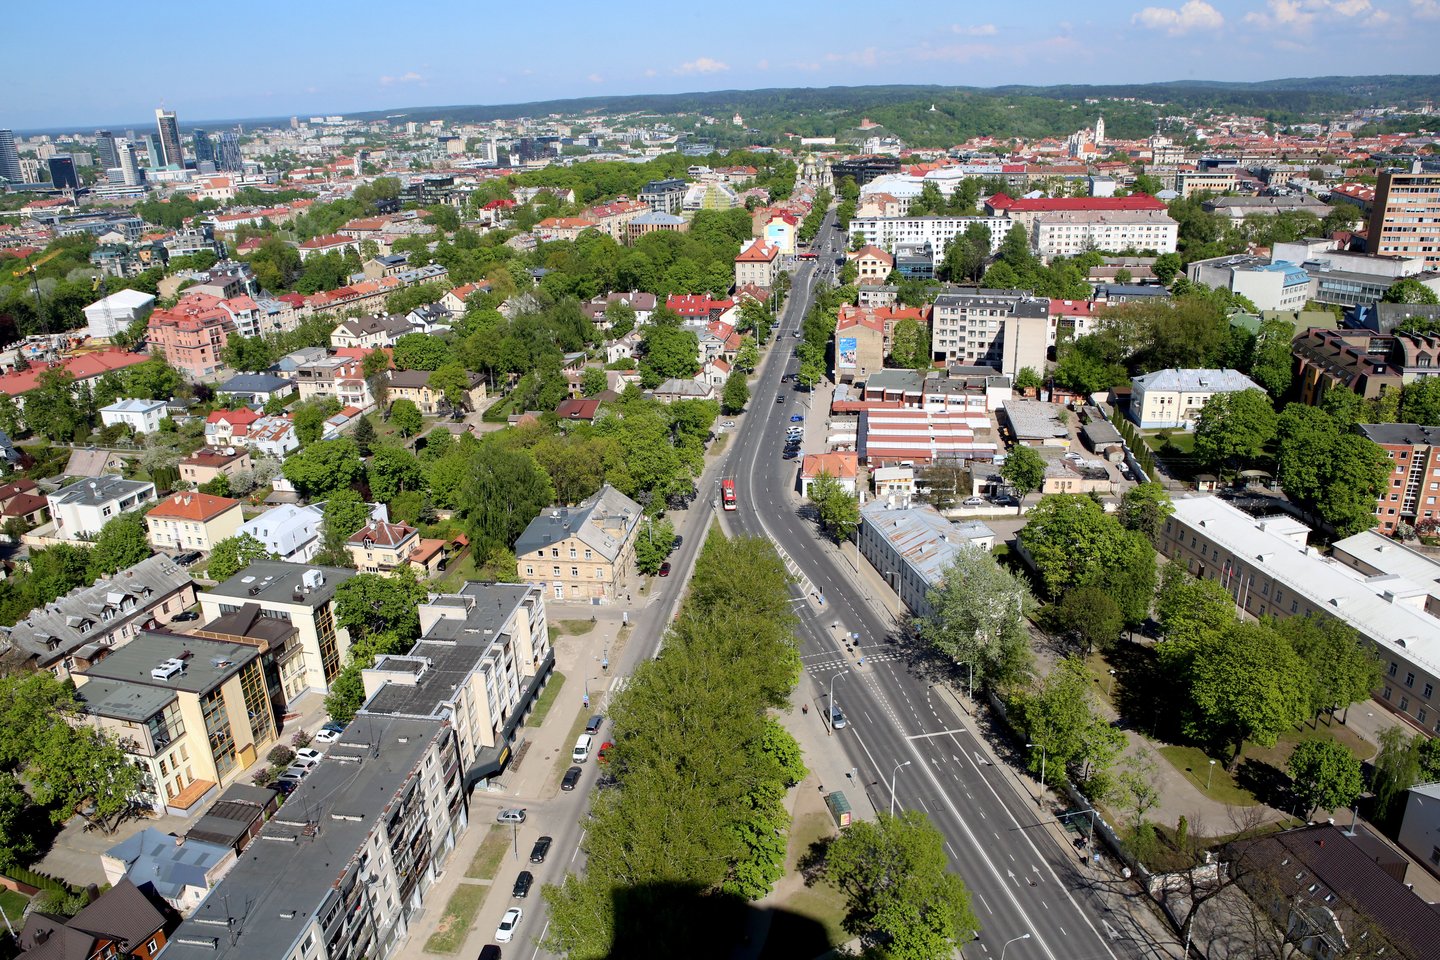 Naujai patvirtintame Vilniaus bendrajame plane numatyta, kad pietinėje miesto dalyje esantis Vilkpėdės mikrorajonas taps prioritetine miesto plėtros teritorija, o ateityje pramoninis kvartalas taps visaverčiu gyvybingu miesto rajonu.<br>M.Patašiaus nuotr.